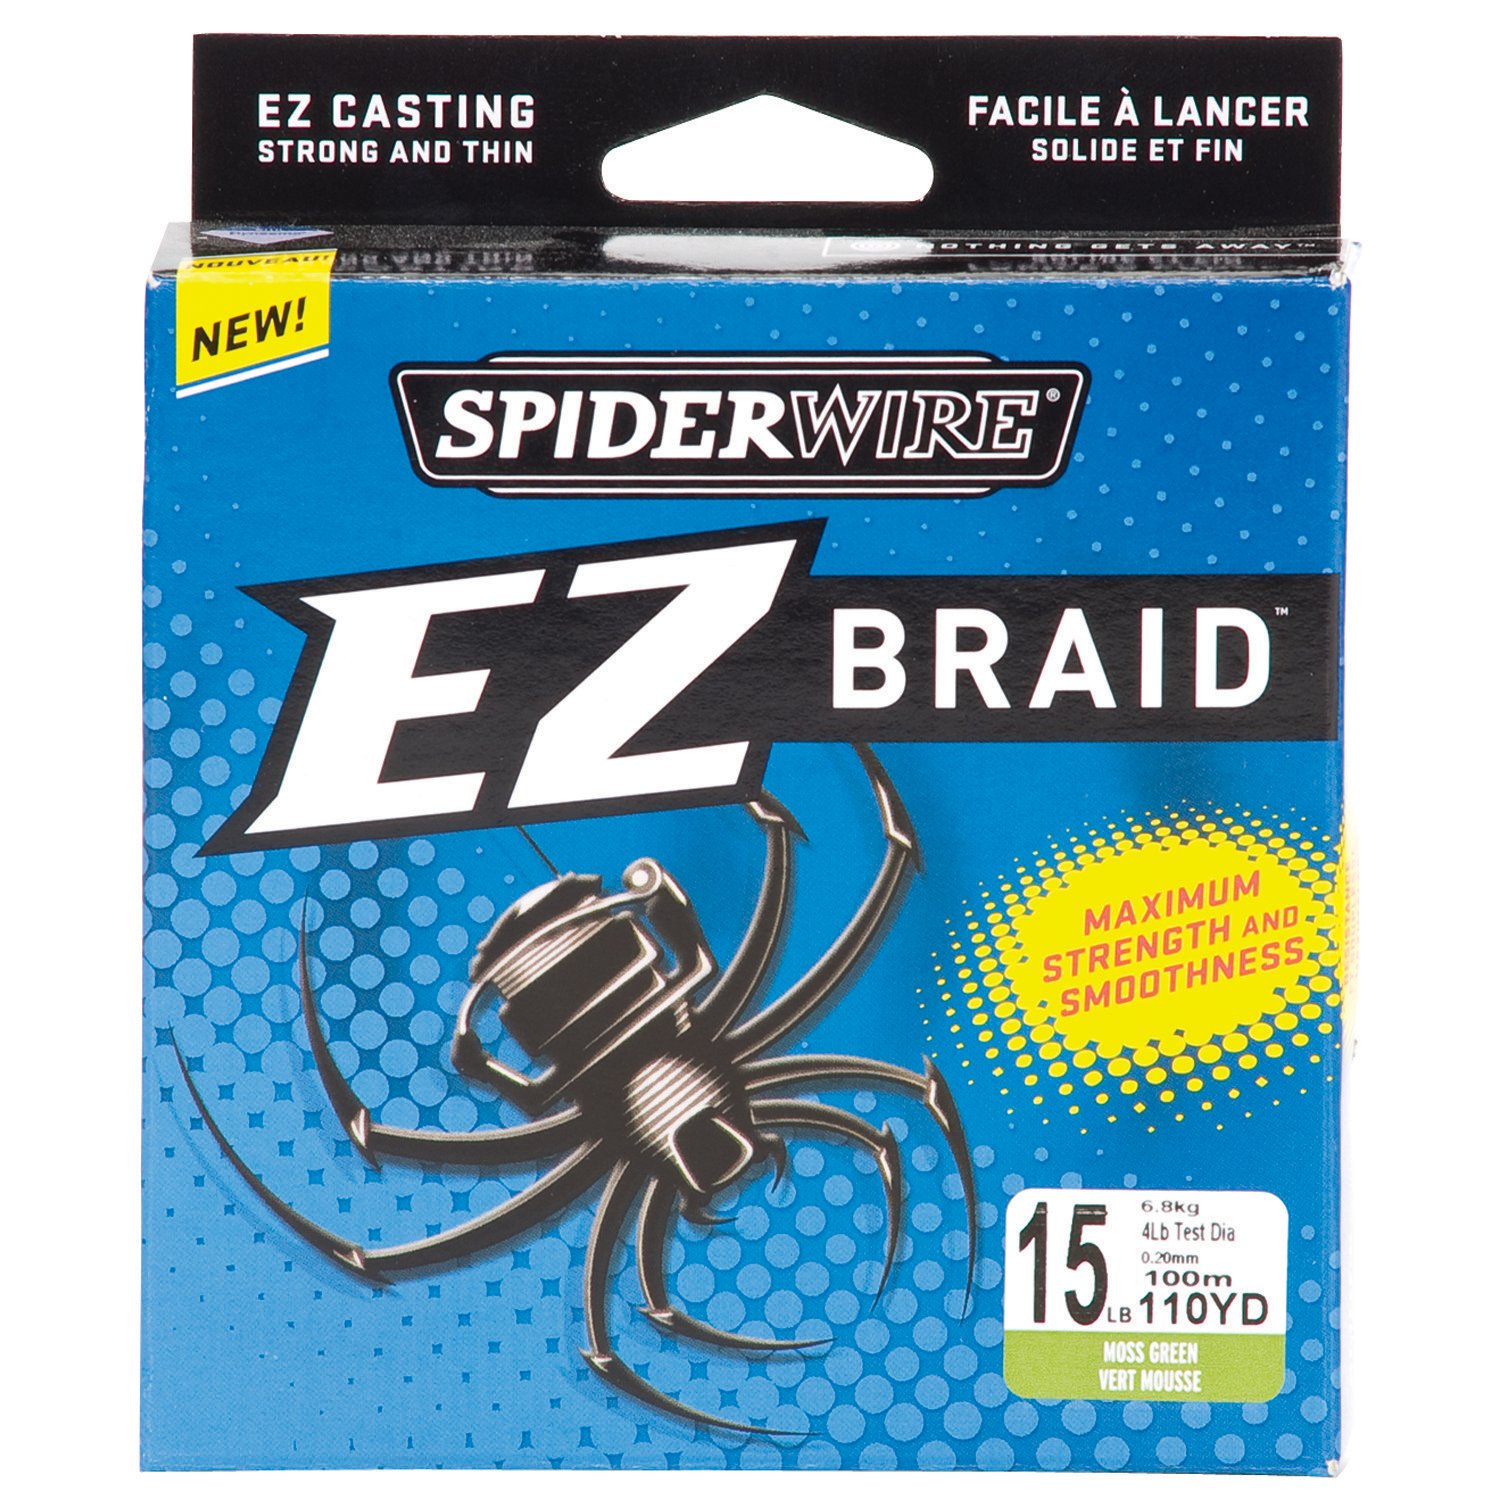 Spiderwire EZ Braid 15 lb - 110 yards Braided Fishing Line, spider